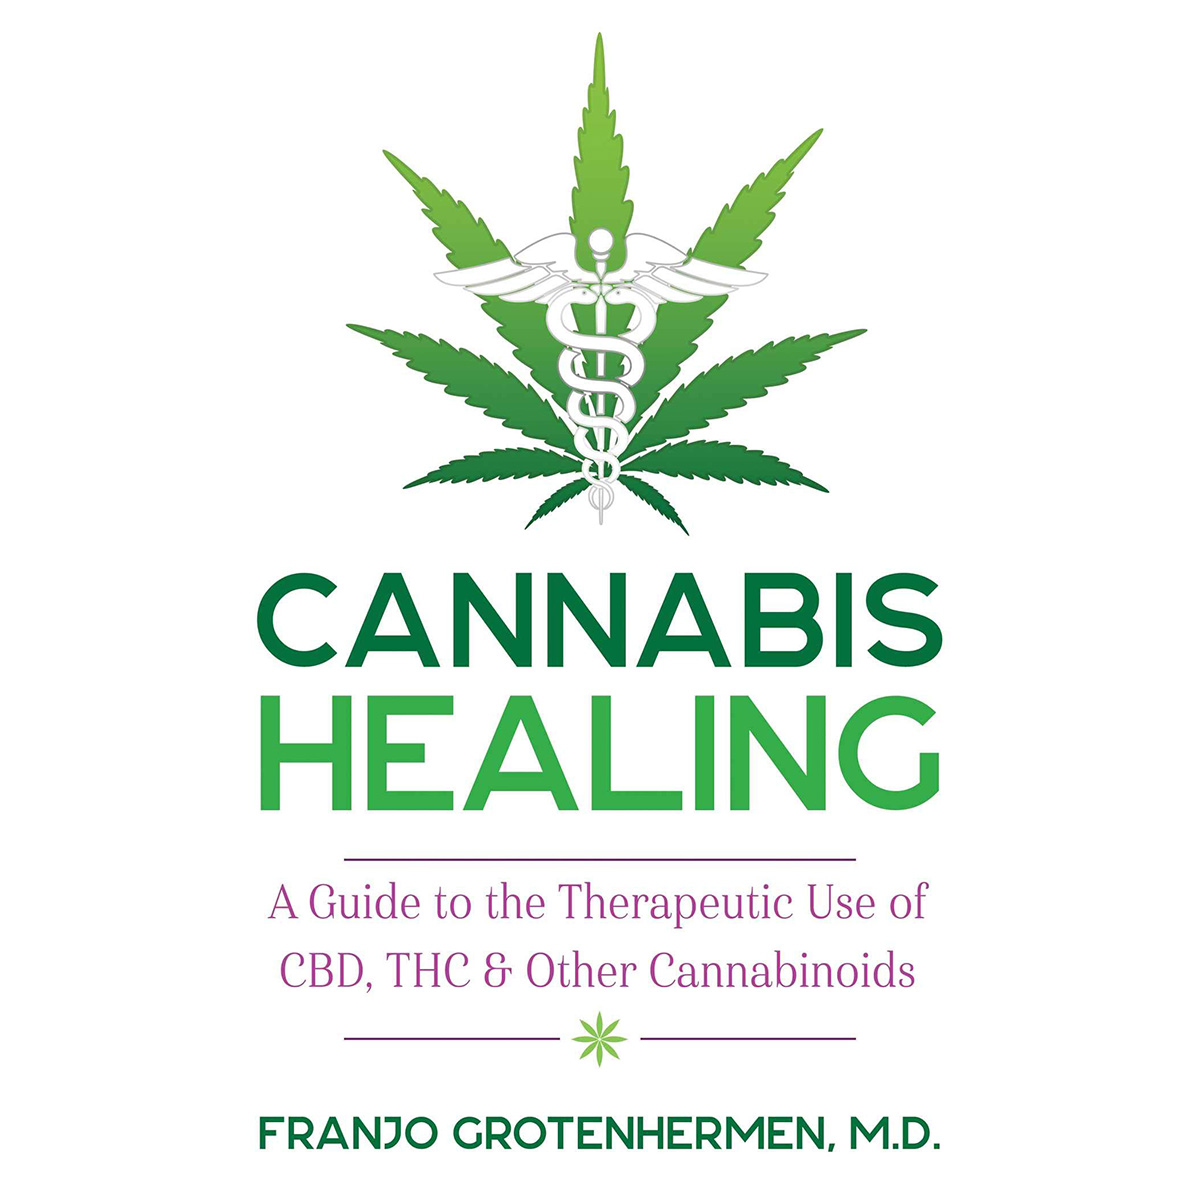 Cannabis Healing